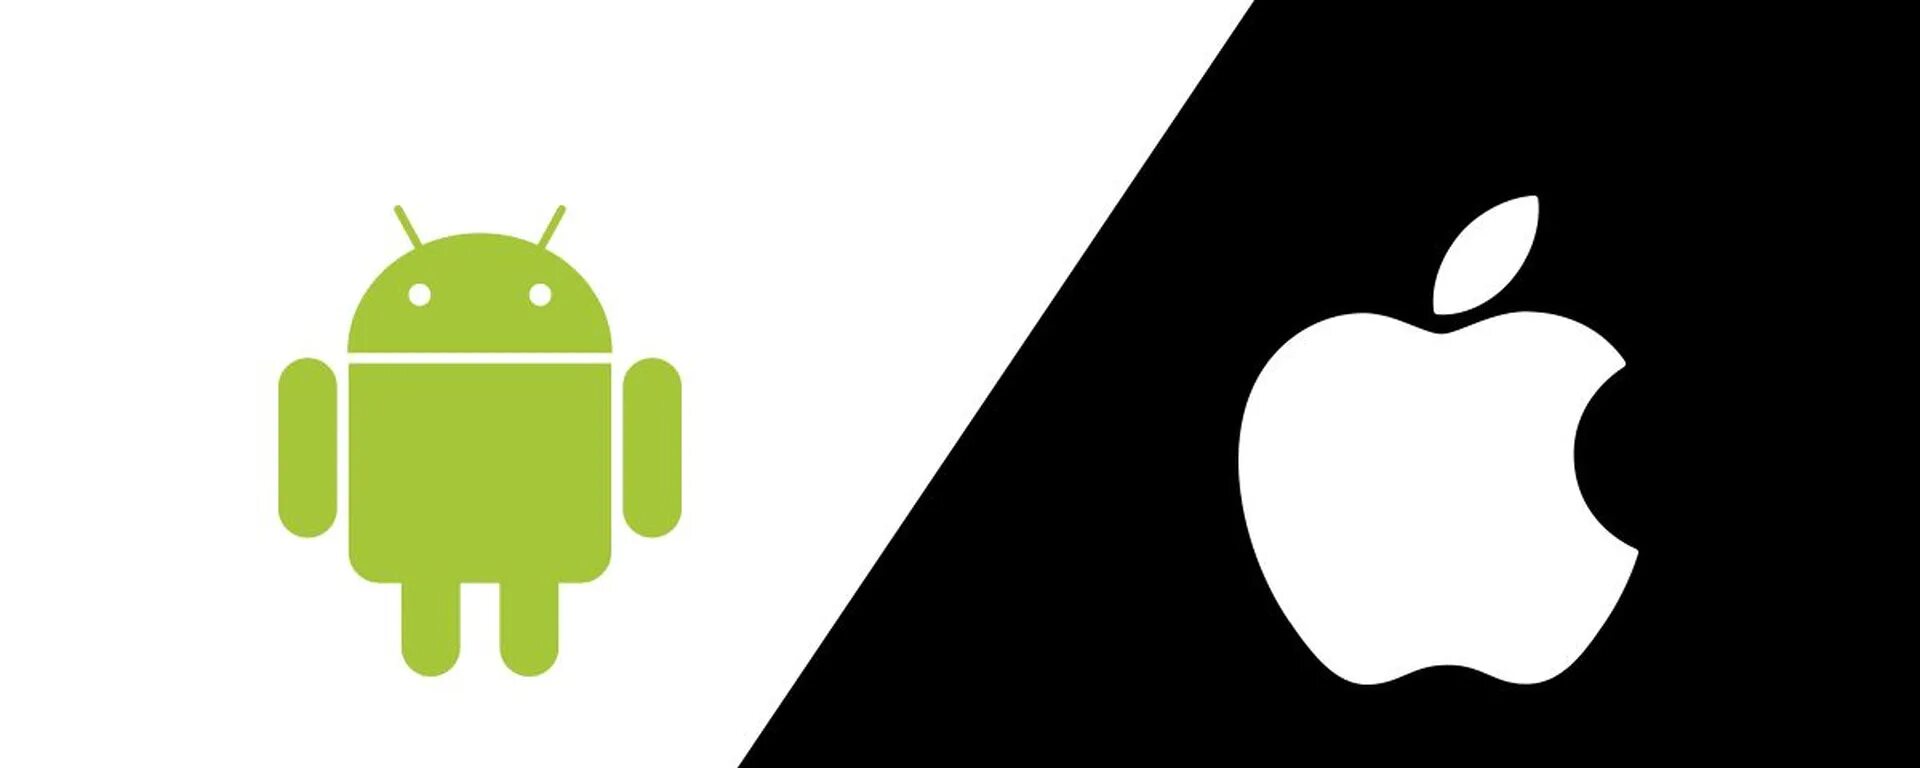 Андроид и айос. IOS Android. Логотип андроид. Значки эпл и андроид.